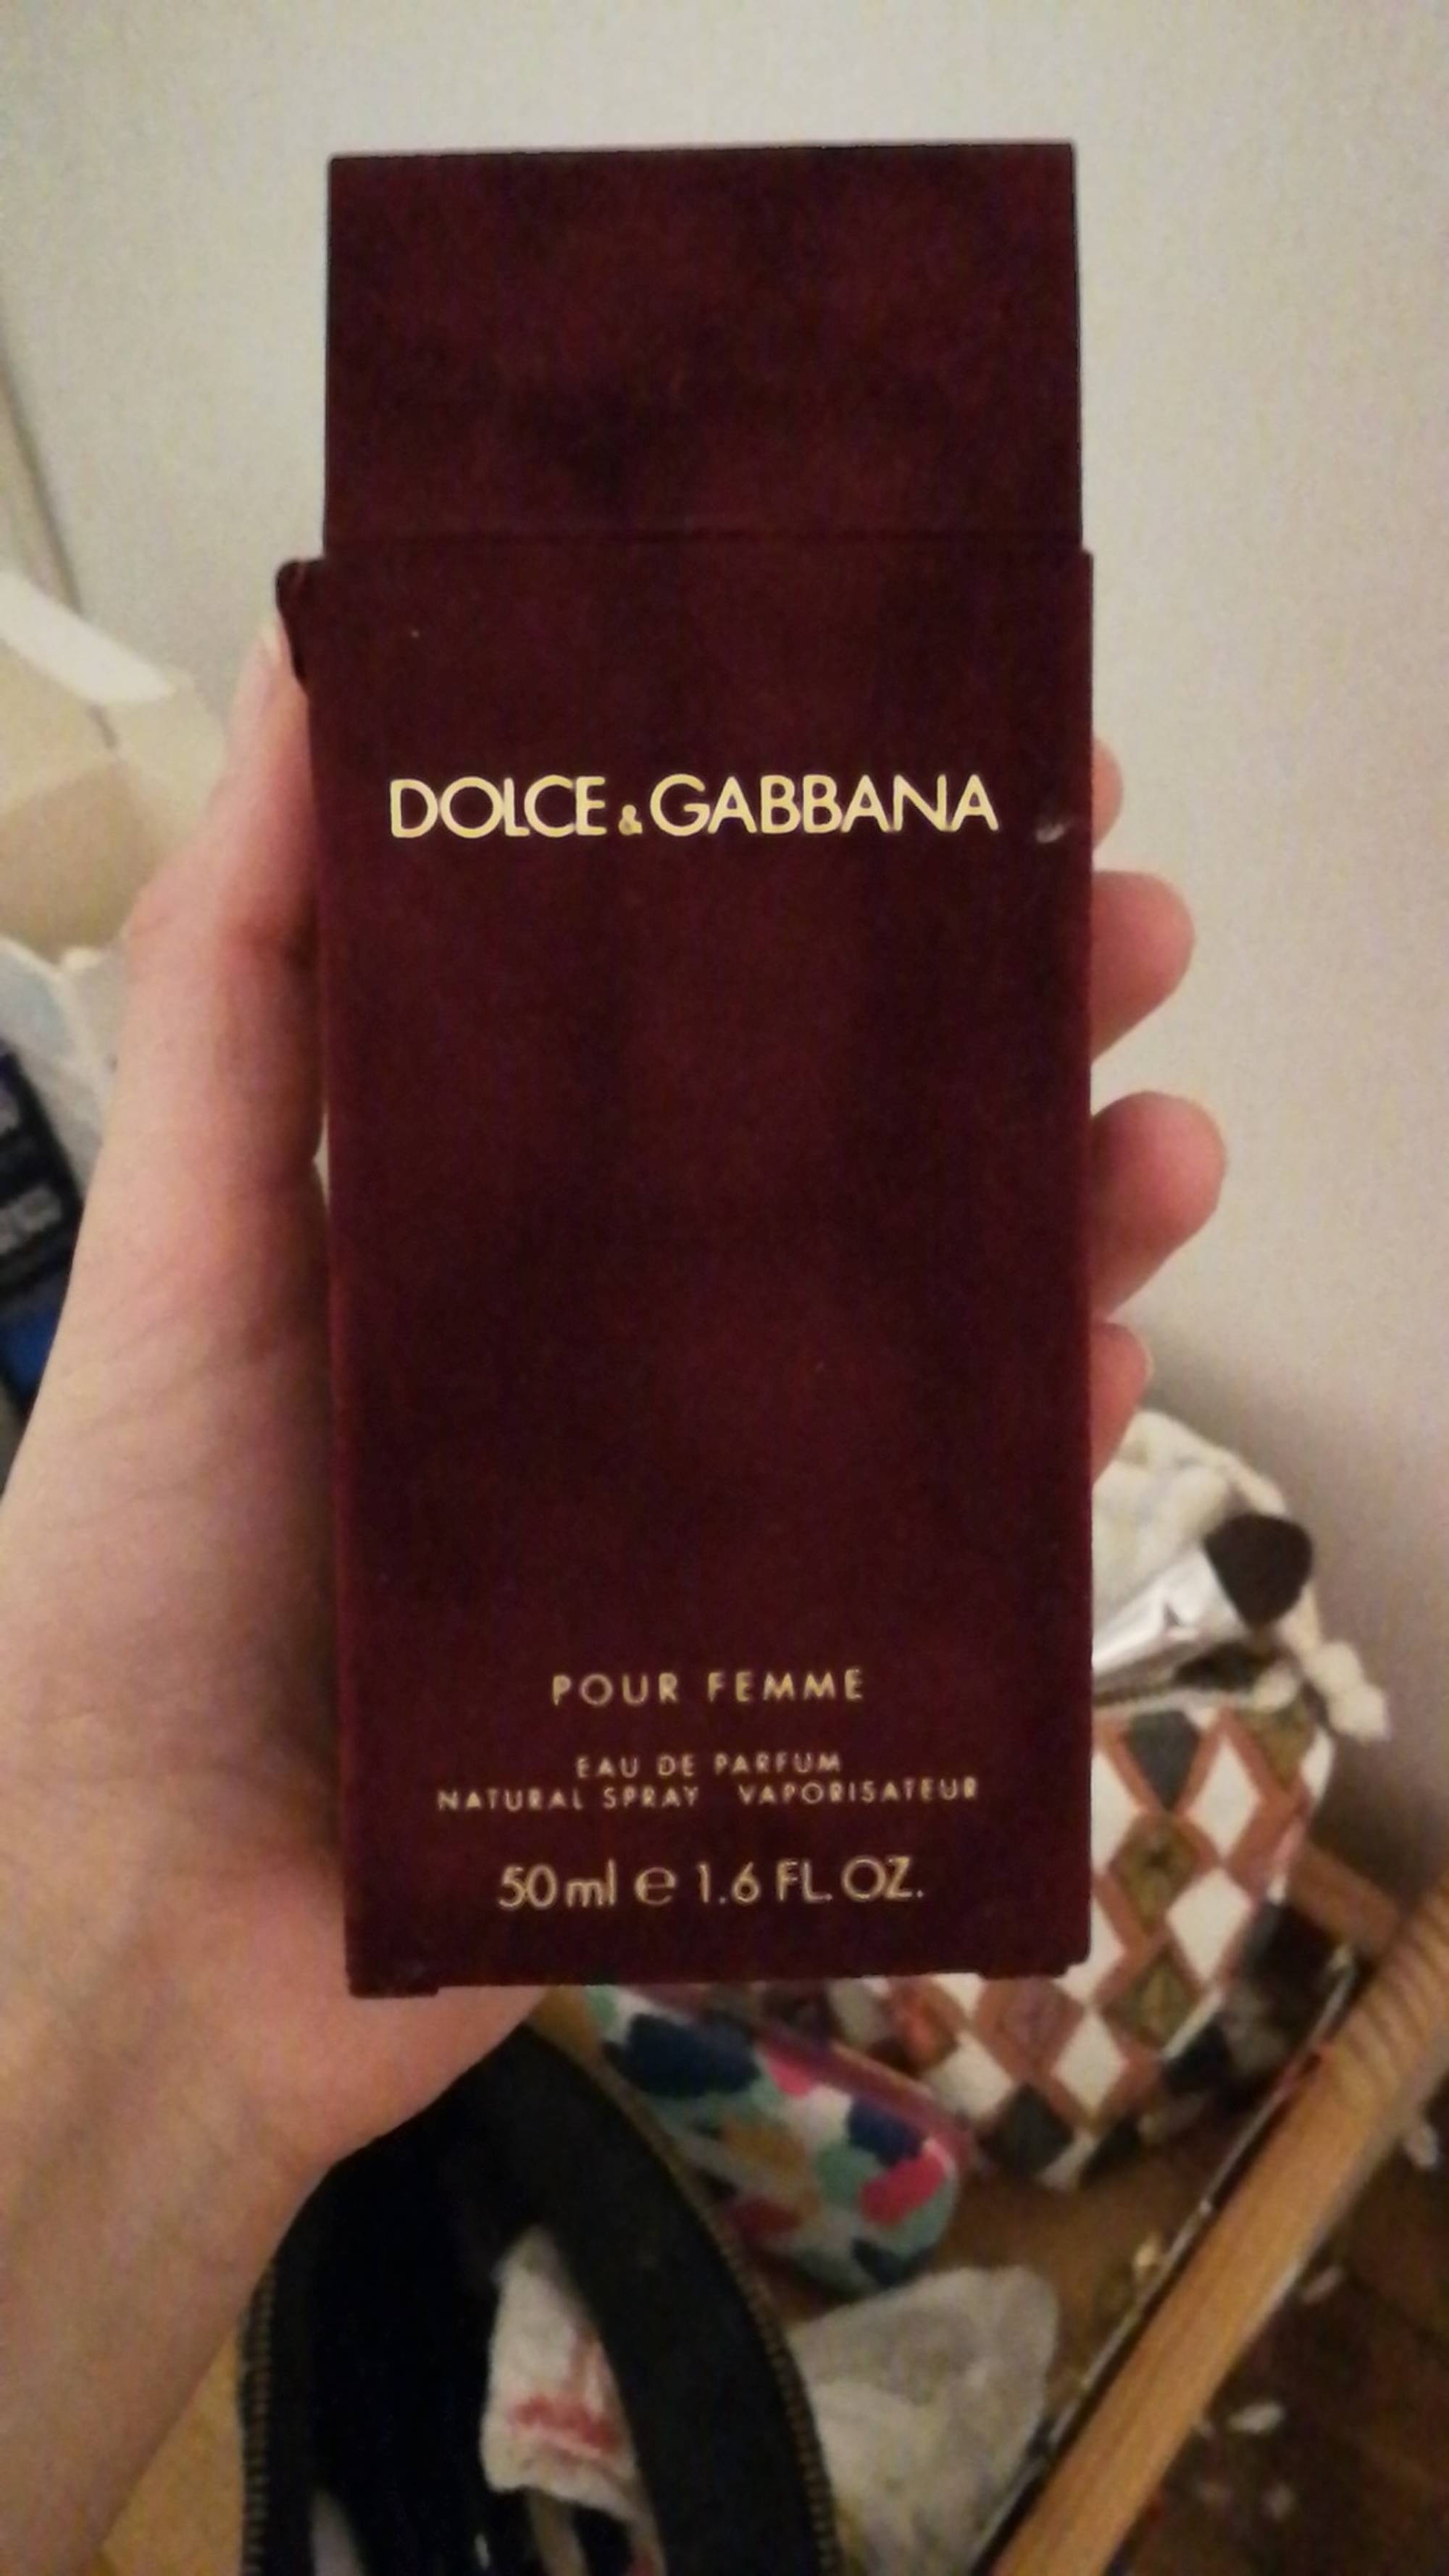 DOLCE & GABBANA - Pour femme - Eau de parfum